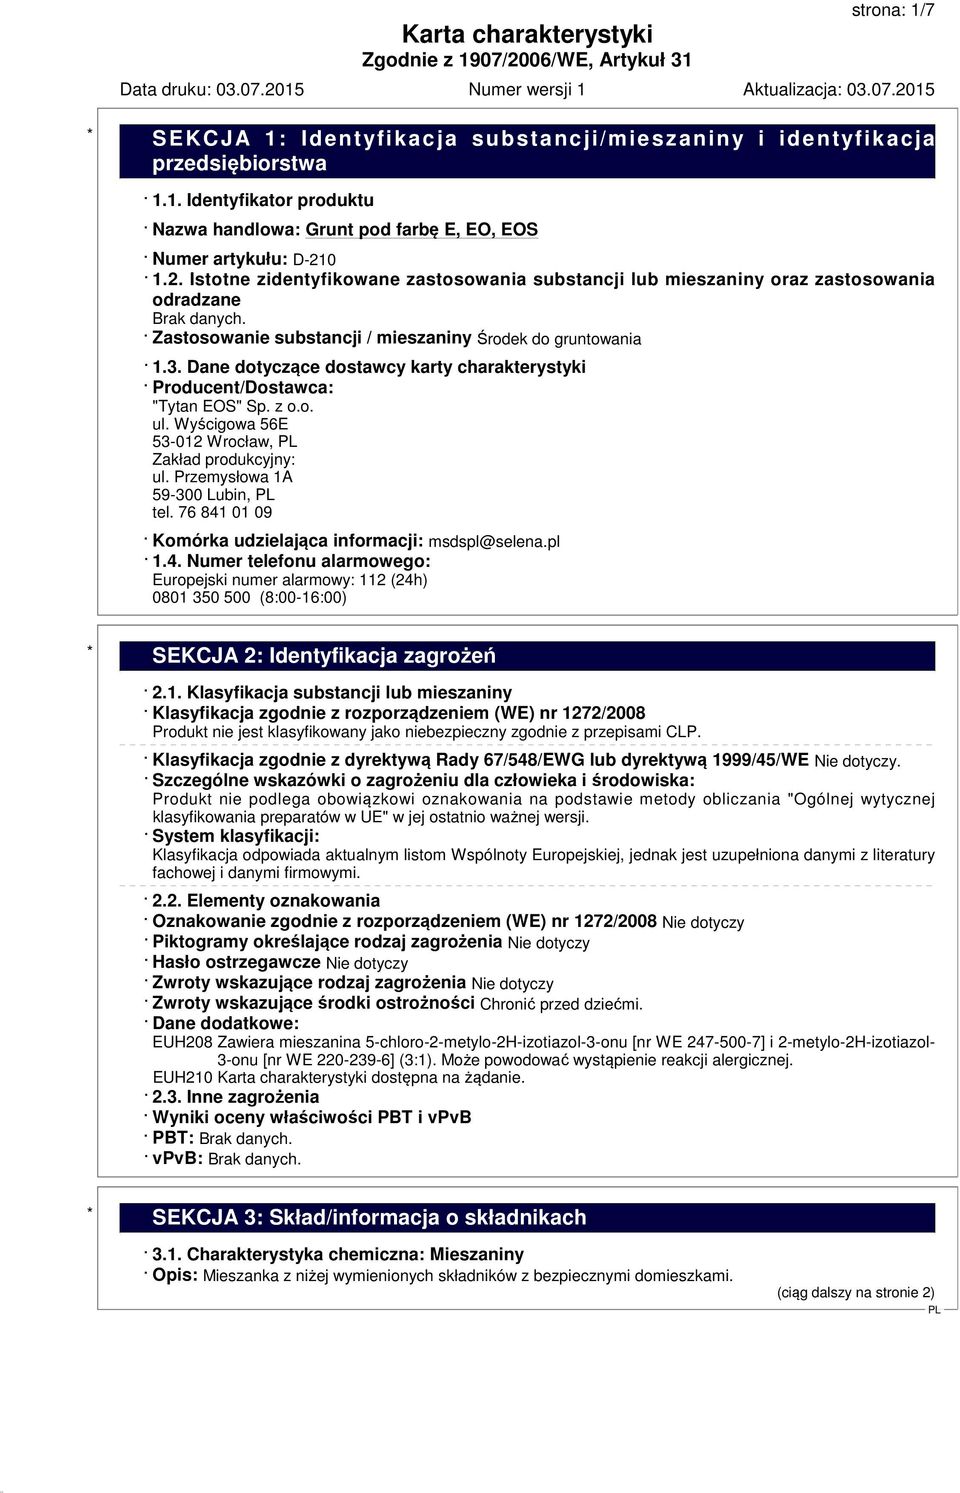 Dane dotyczące dostawcy karty charakterystyki Producent/Dostawca: "Tytan EOS" Sp. z o.o. ul. Wyścigowa 56E 53-012 Wrocław, Zakład produkcyjny: ul. Przemysłowa 1A 59-300 Lubin, tel.